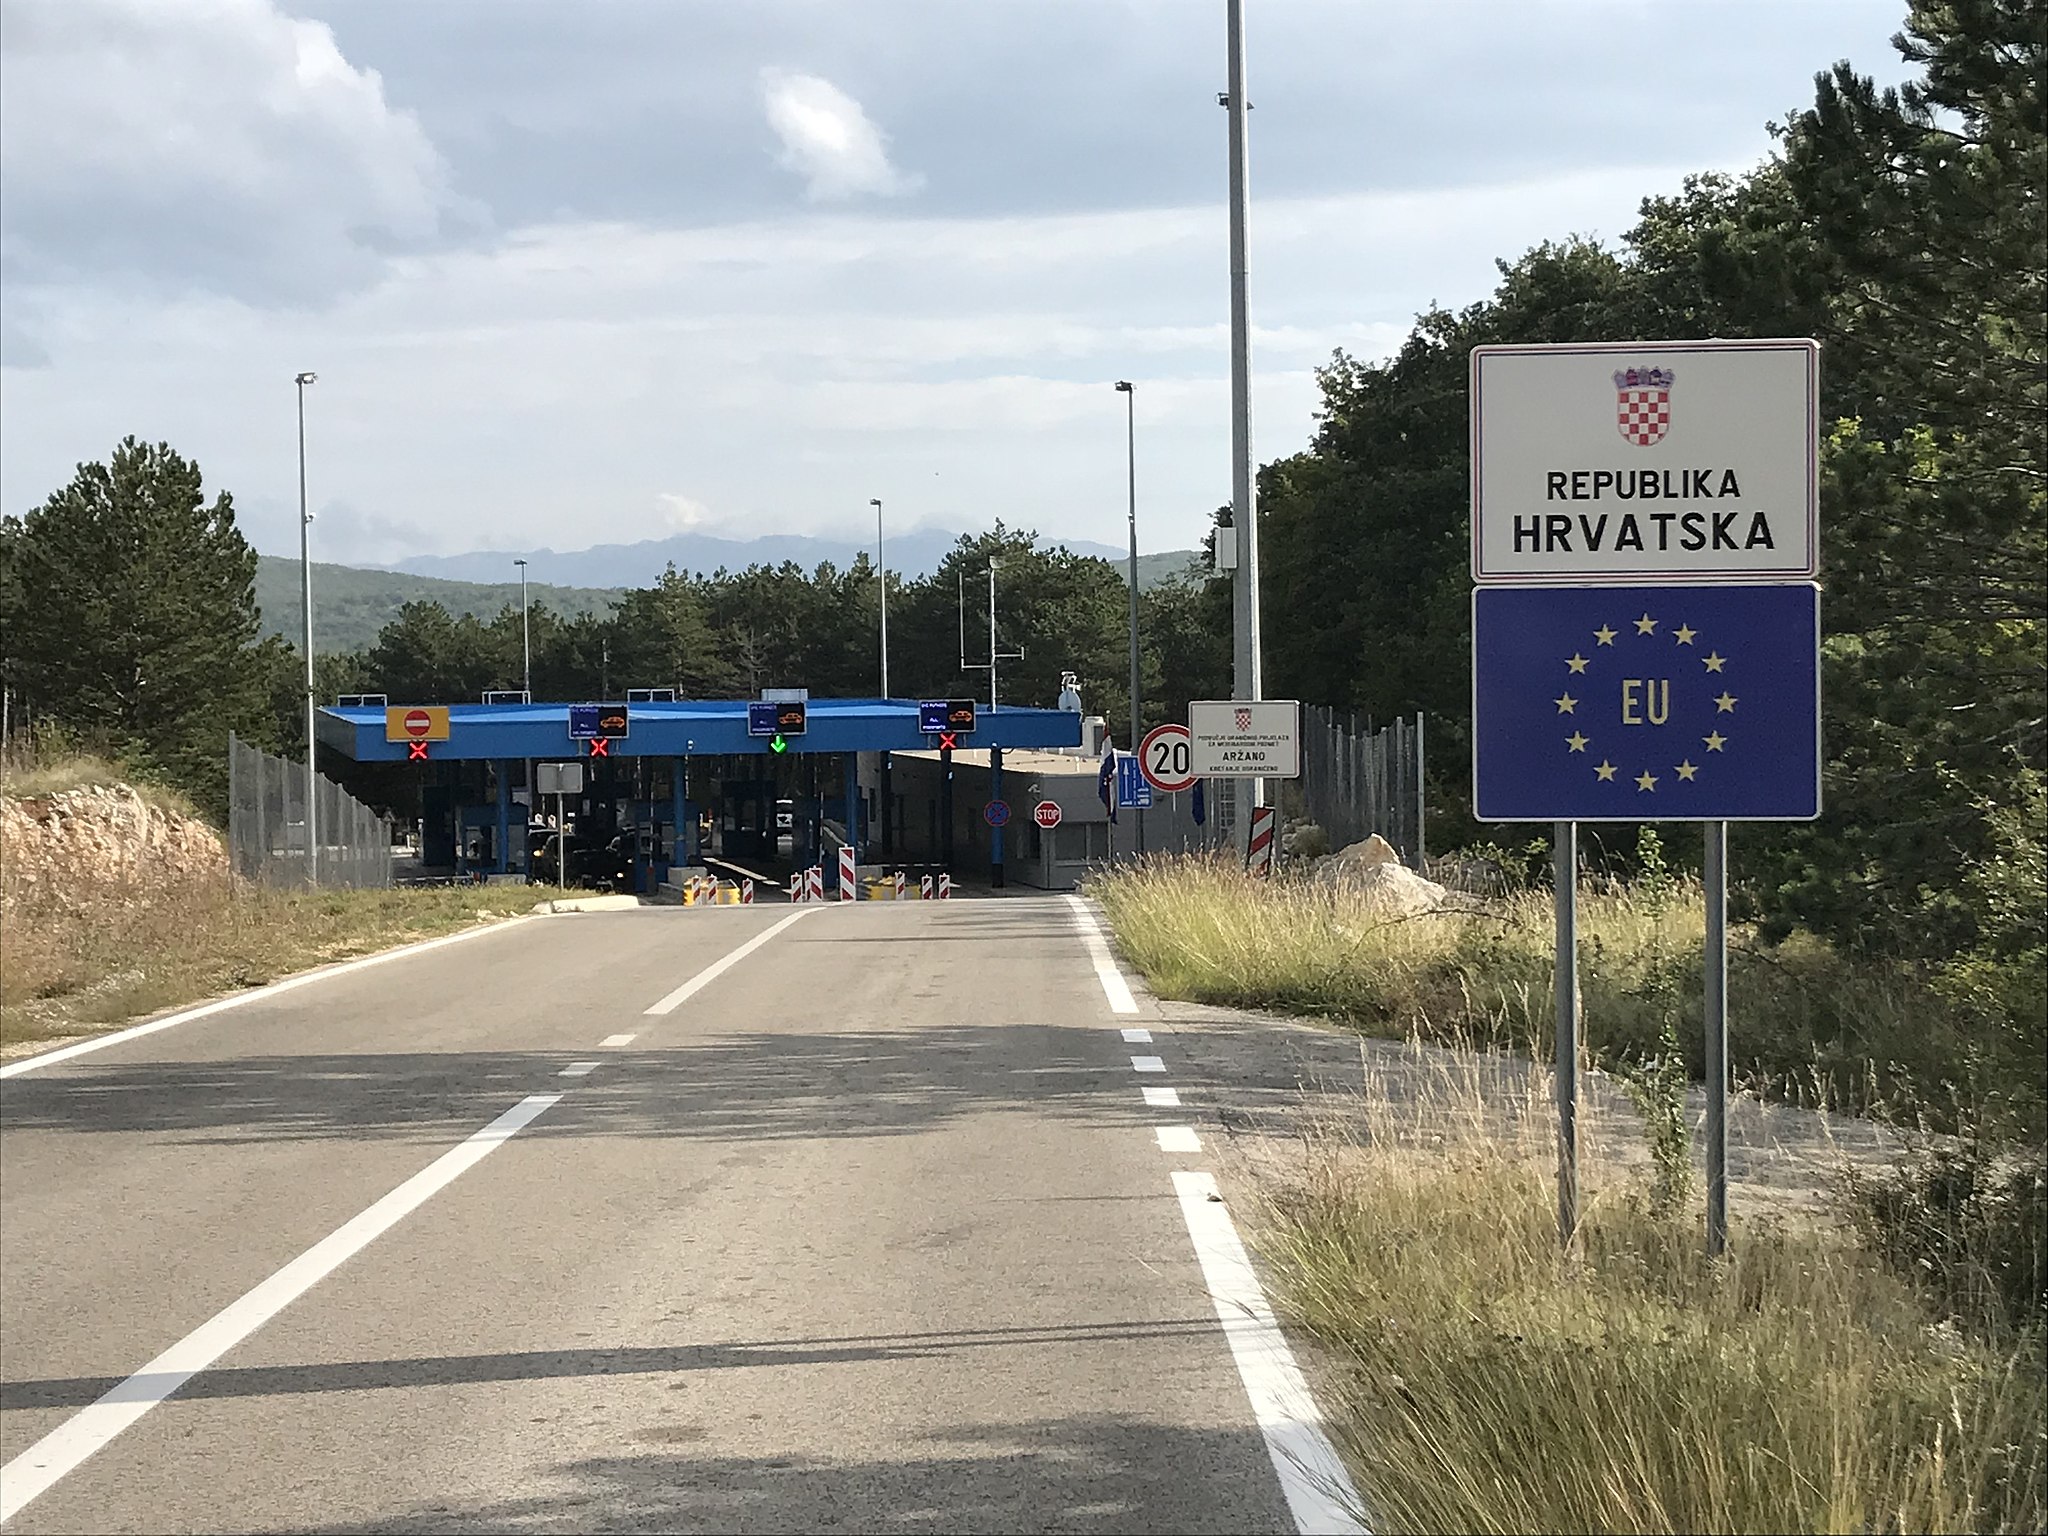 The border crossing into Croatia from Bosnia-Herzegovina